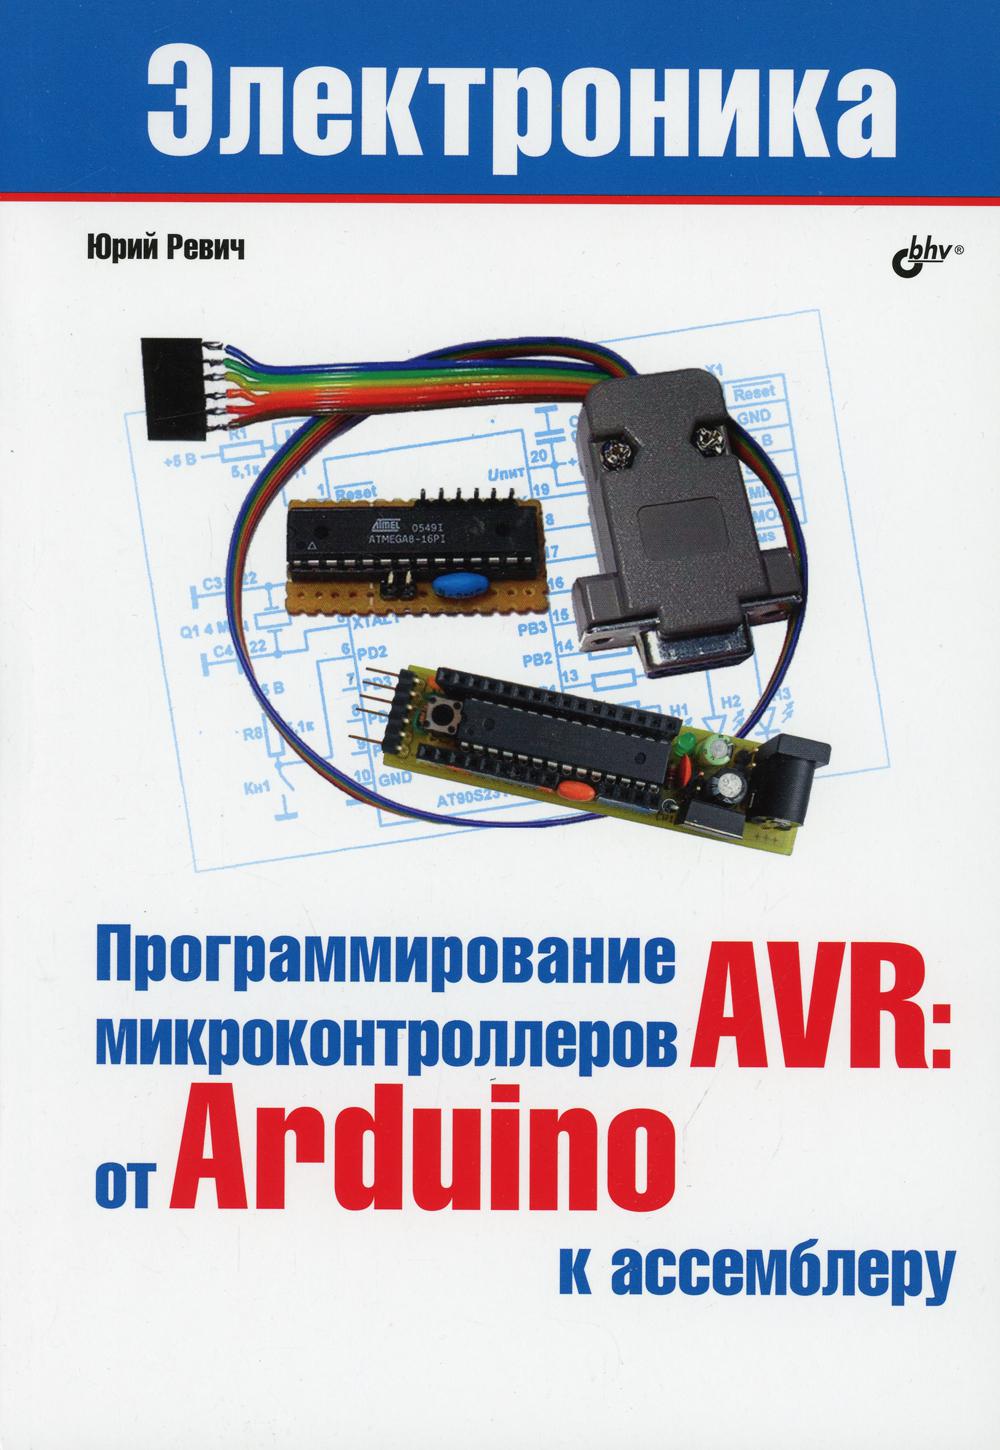 Электроника. Программирование микроконтллеров AVR: от Arduini к ассемблеру